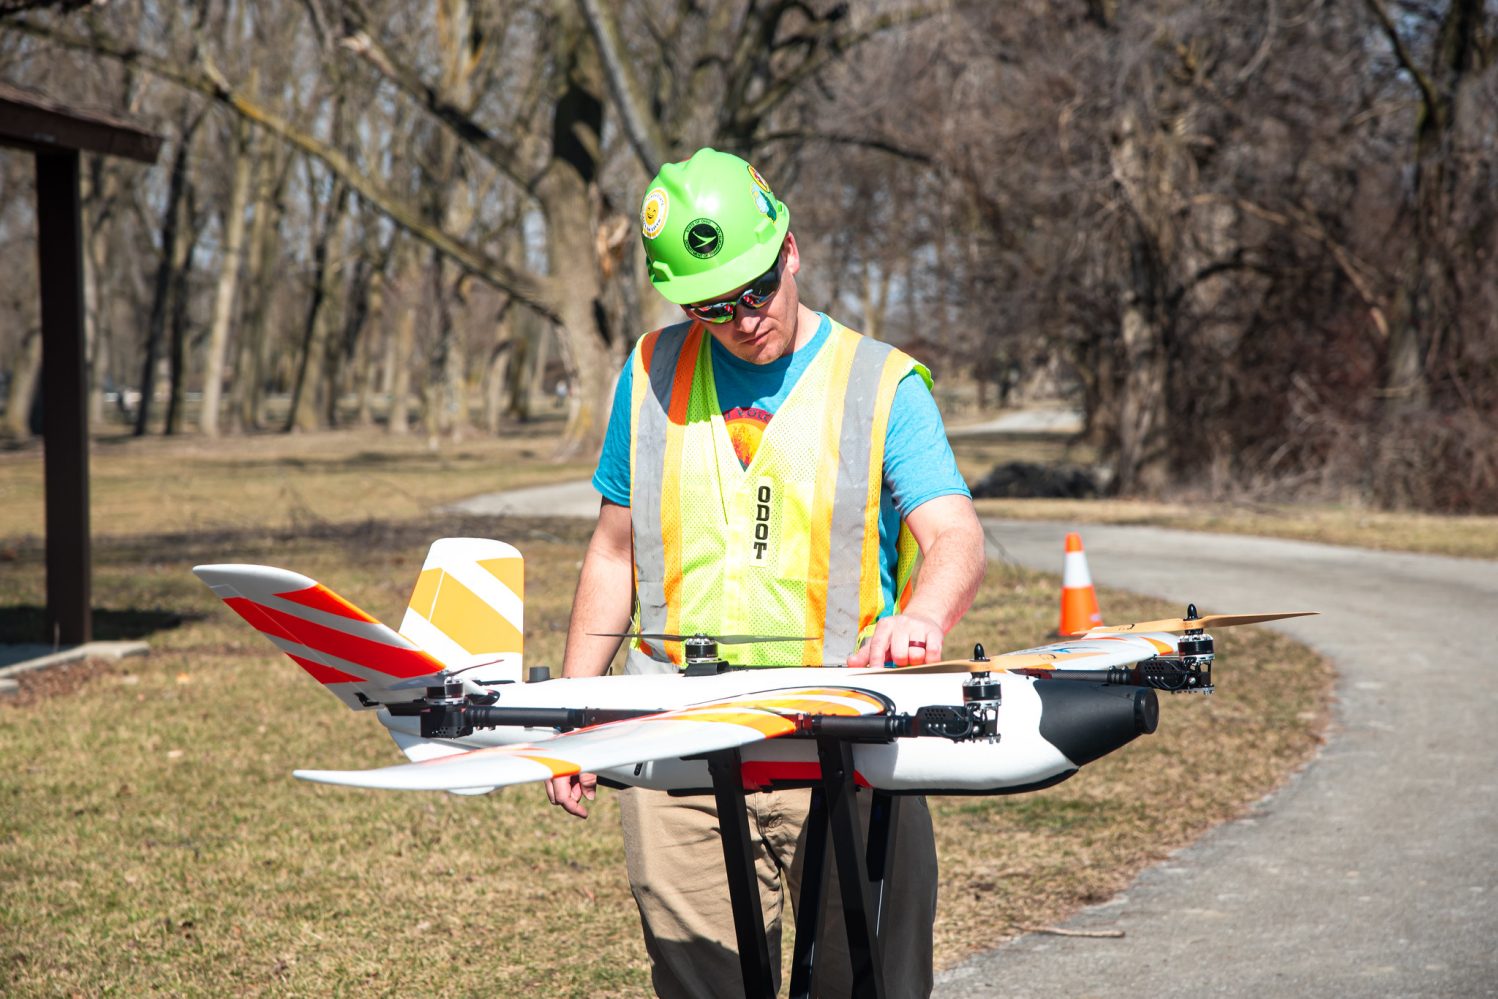 ohio route US 33 traffic monitor drone surveillance